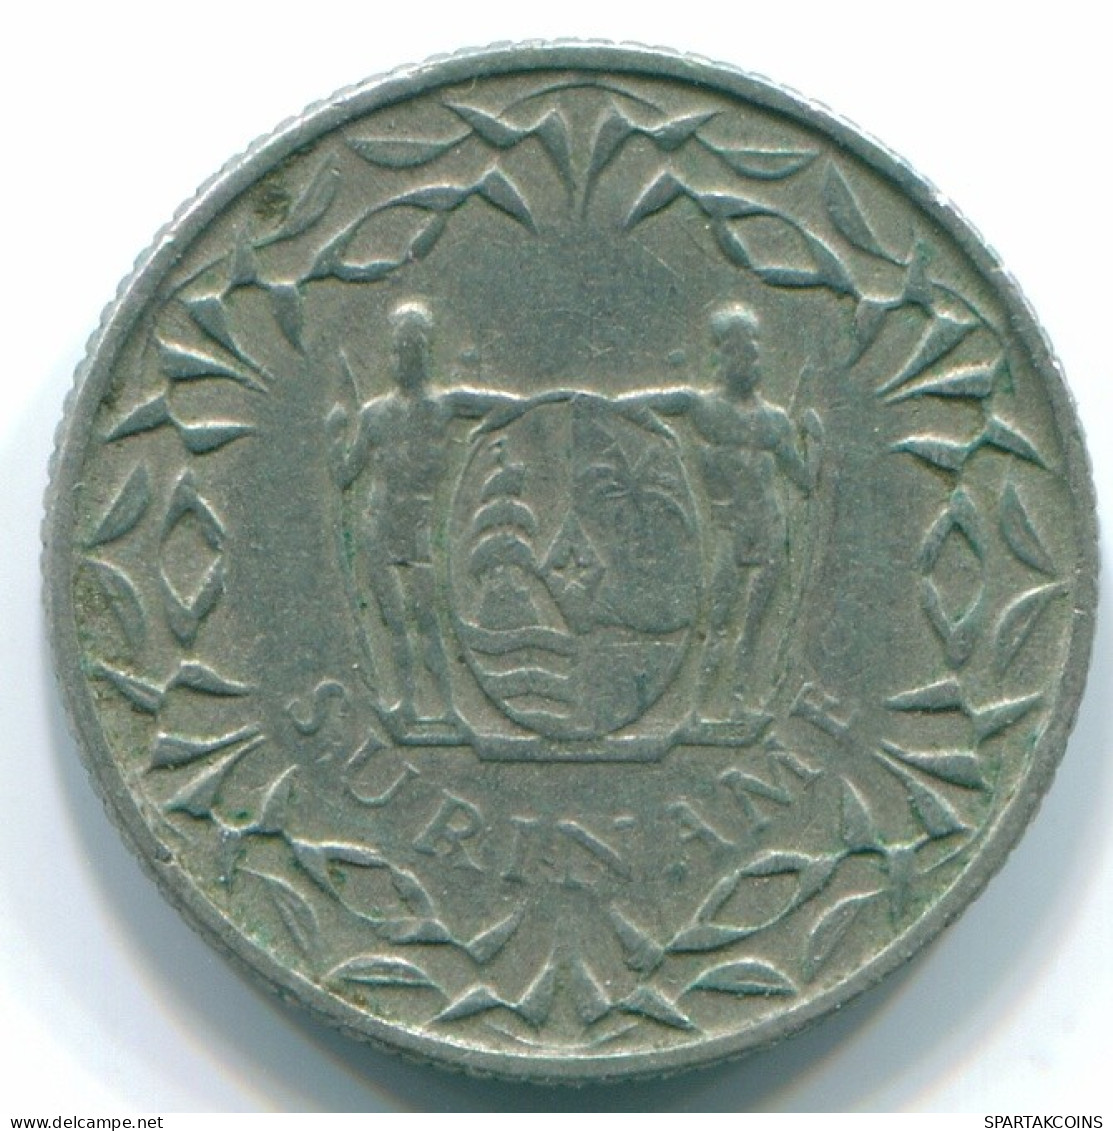 10 CENTS 1962 SURINAM NIEDERLANDE Nickel Koloniale Münze #S13214.D.A - Surinam 1975 - ...